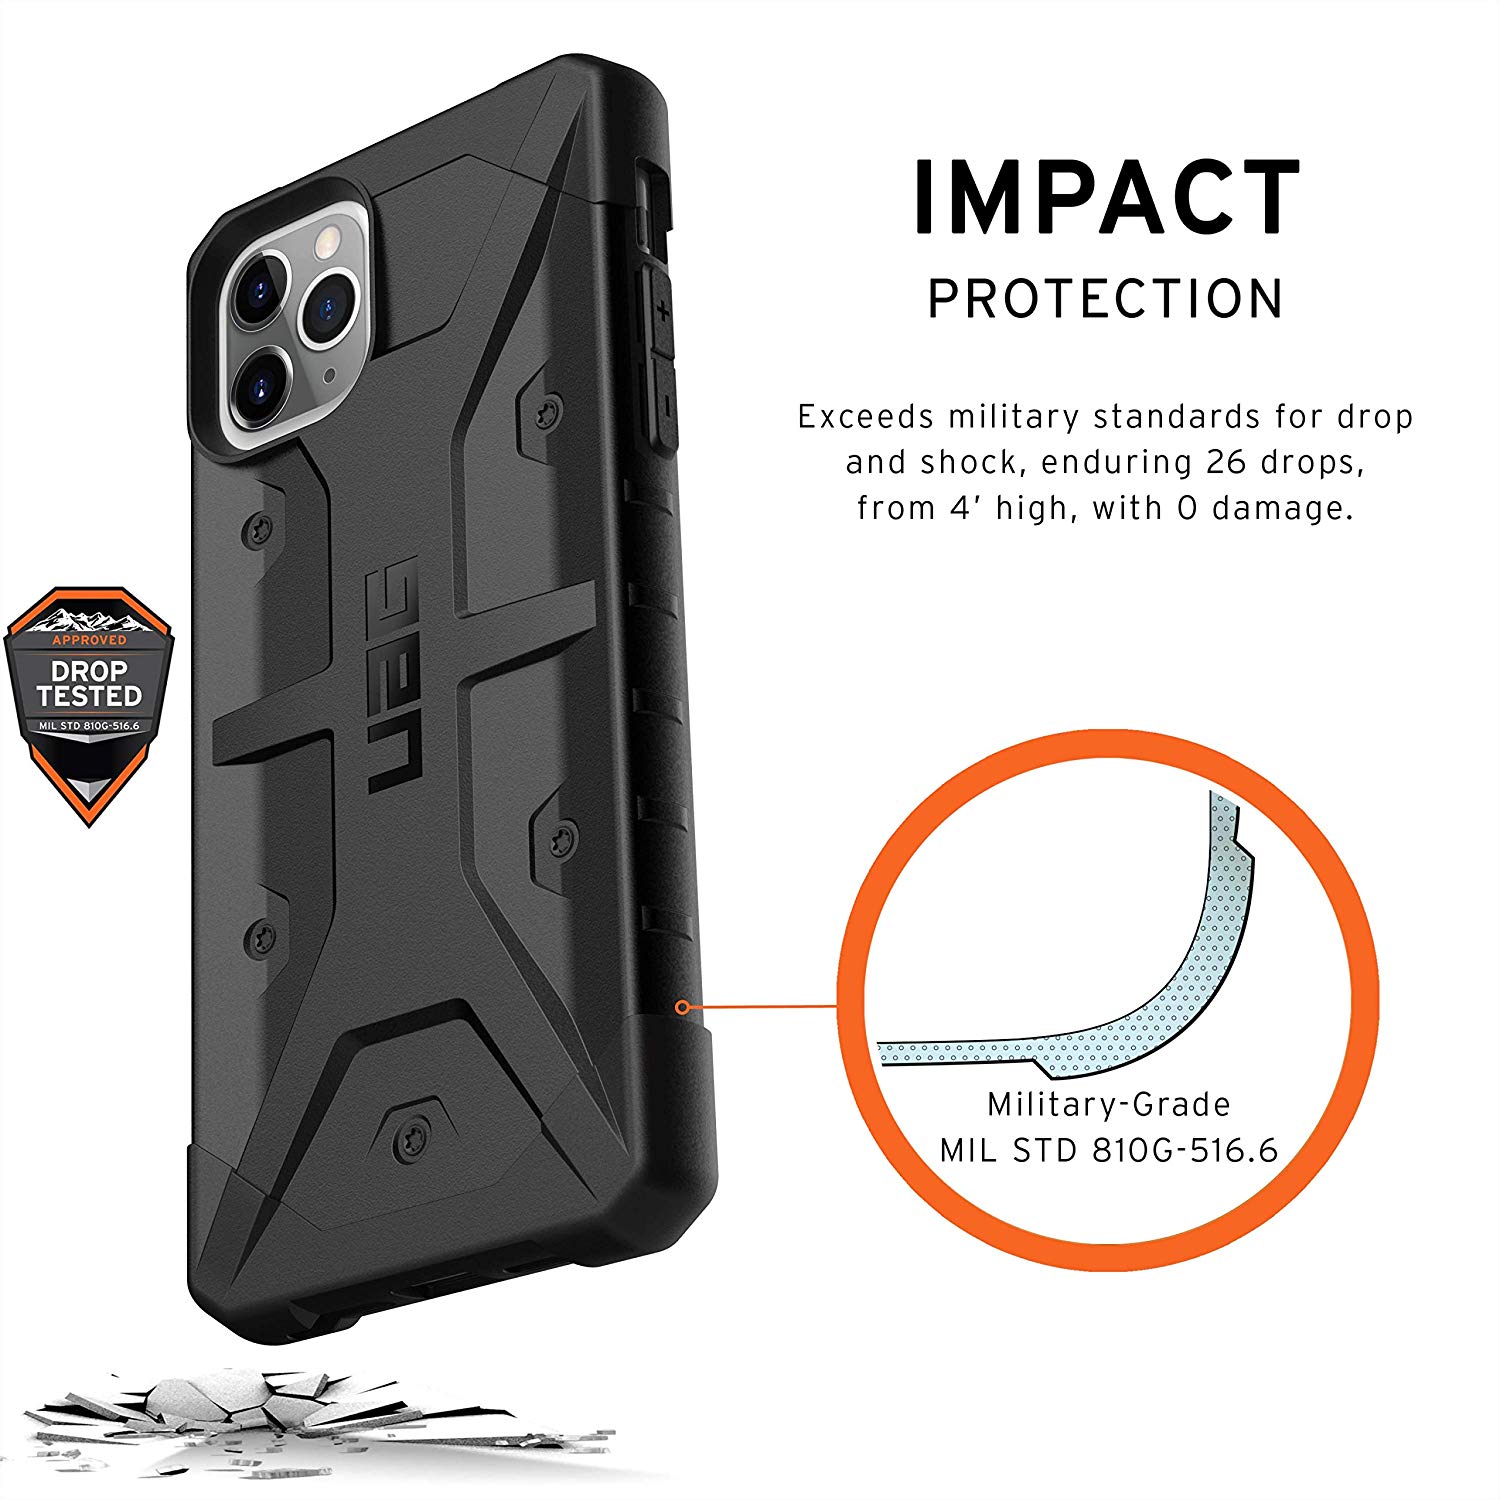 Противоударный защитный чехол UAG Pathfinder Series Case Black для iPhone 11 Pro Max